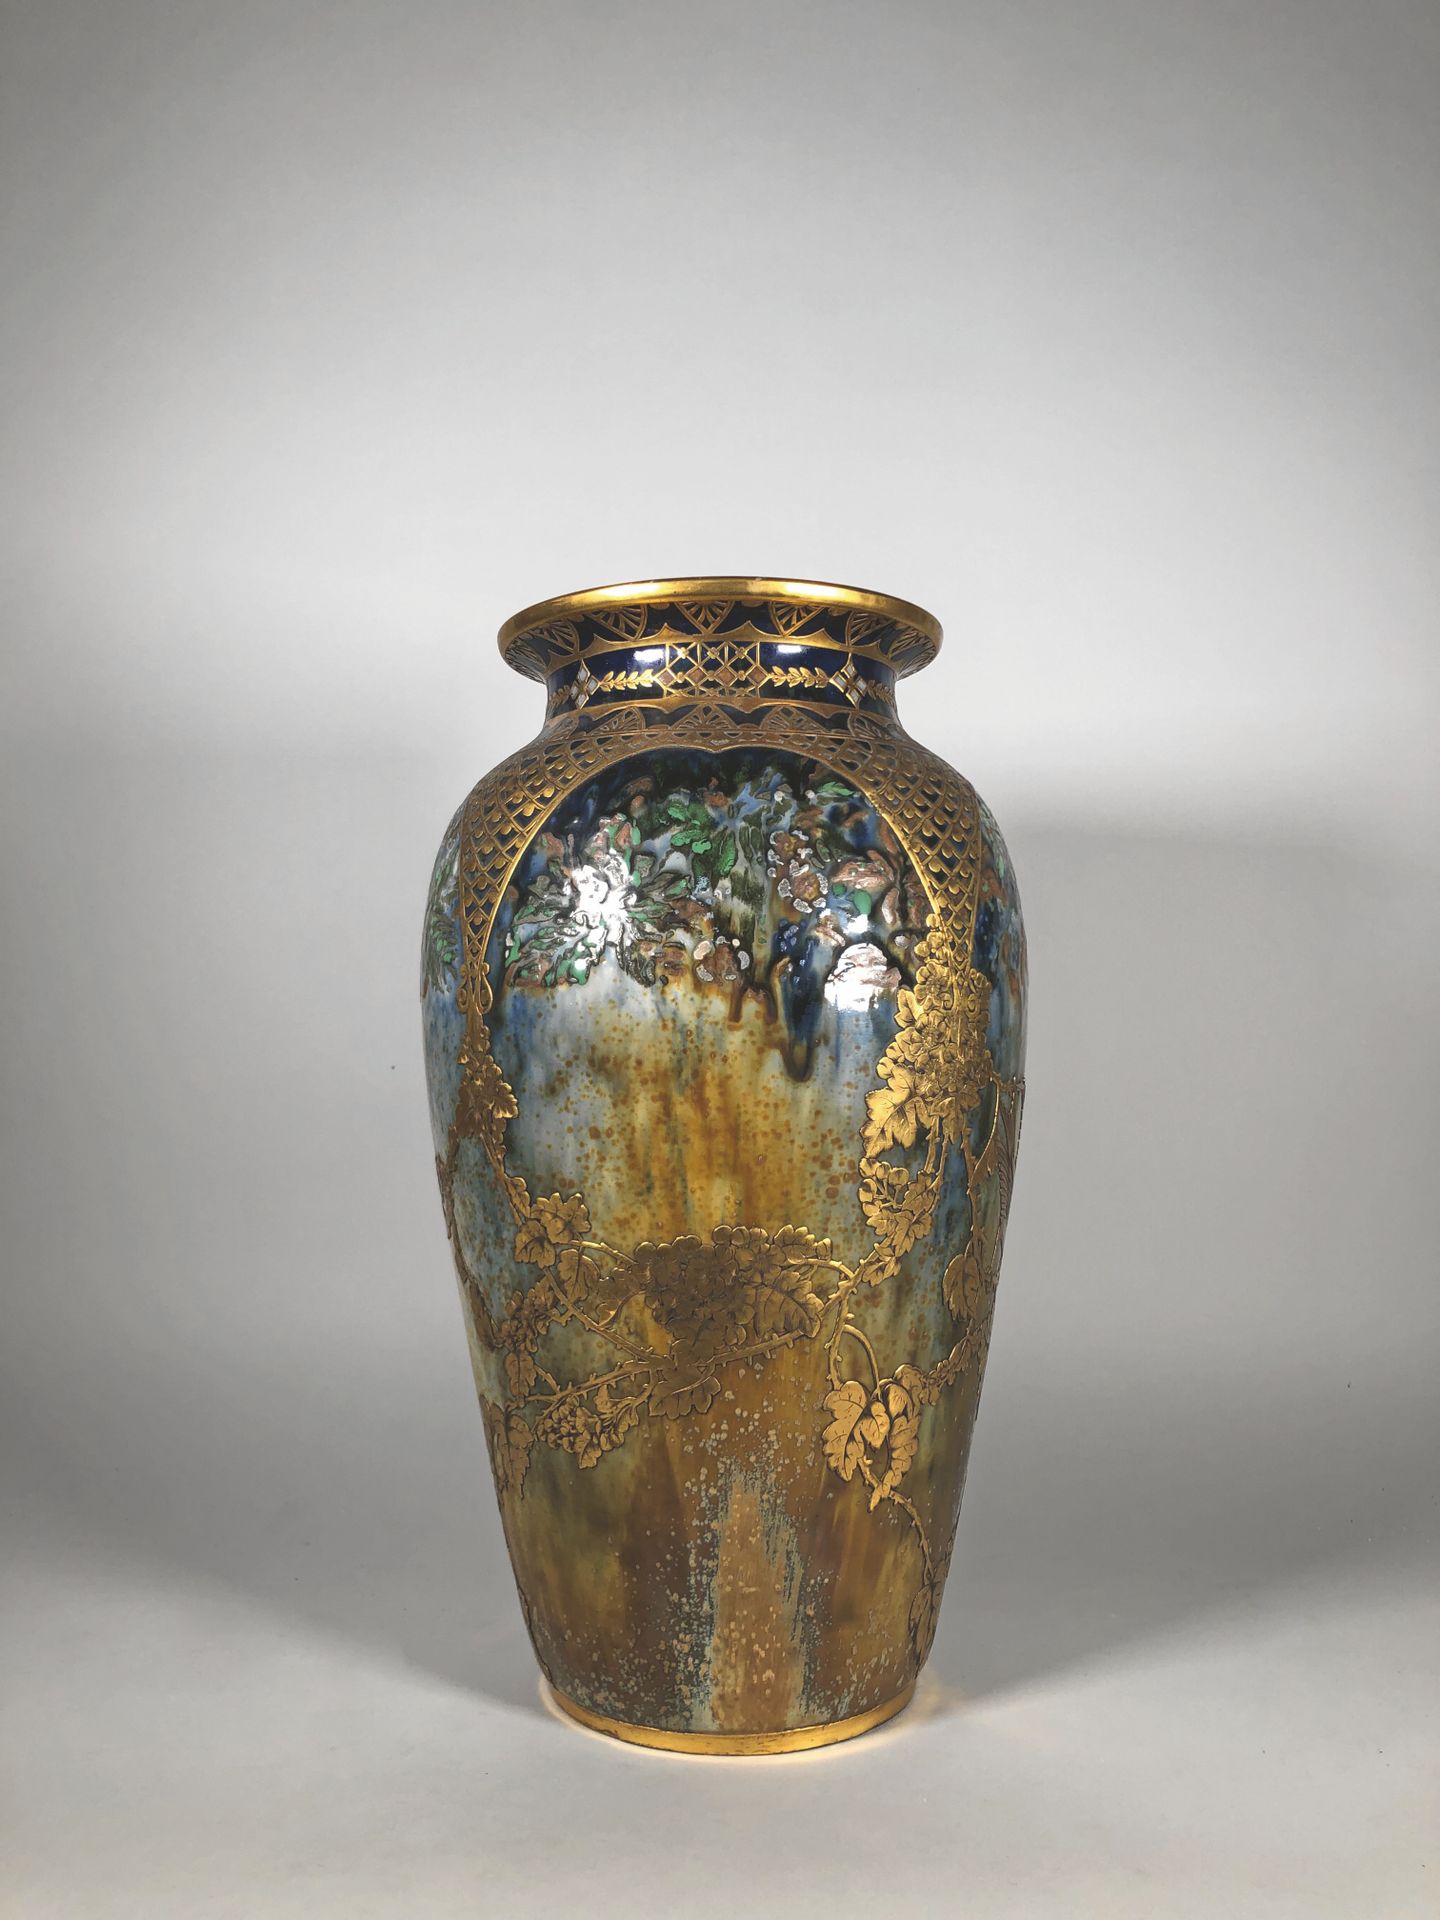 Null 新艺术运动学校

釉面炻器花瓶，带有多色景观装饰，通过鎏金黄铜的植物、鸟和蜻蜓的应用来加强。

高度：47厘米